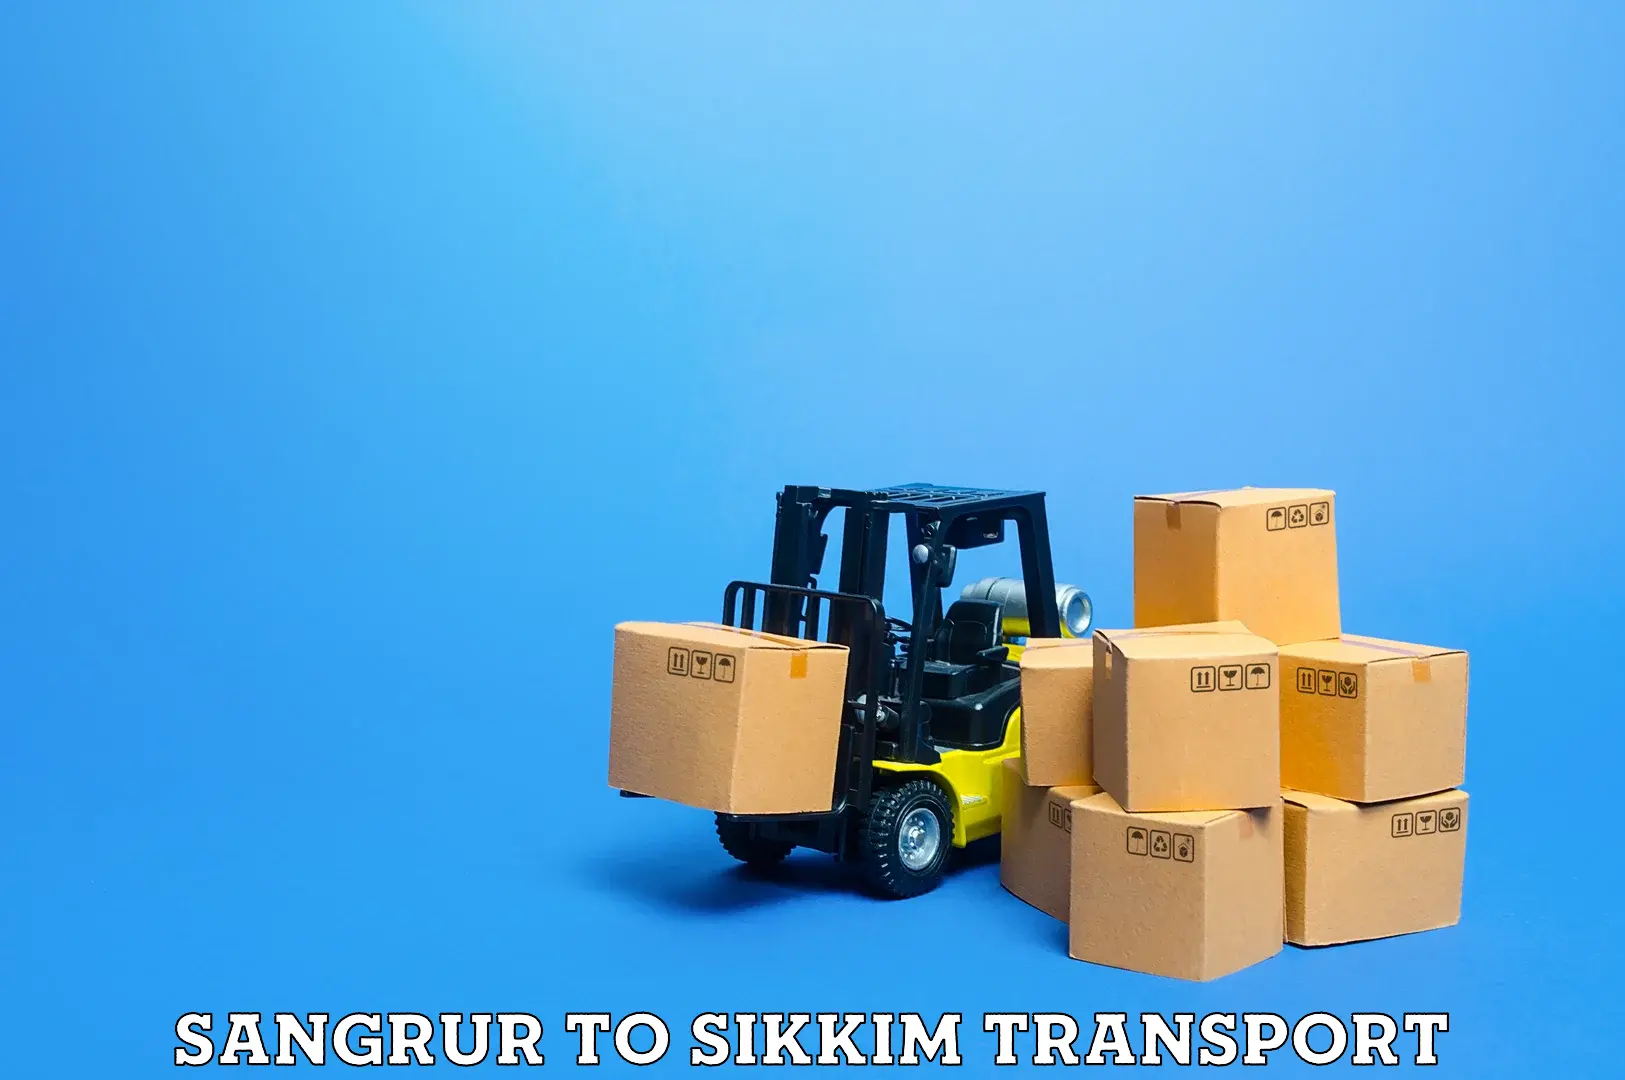 Cycle transportation service Sangrur to Mangan